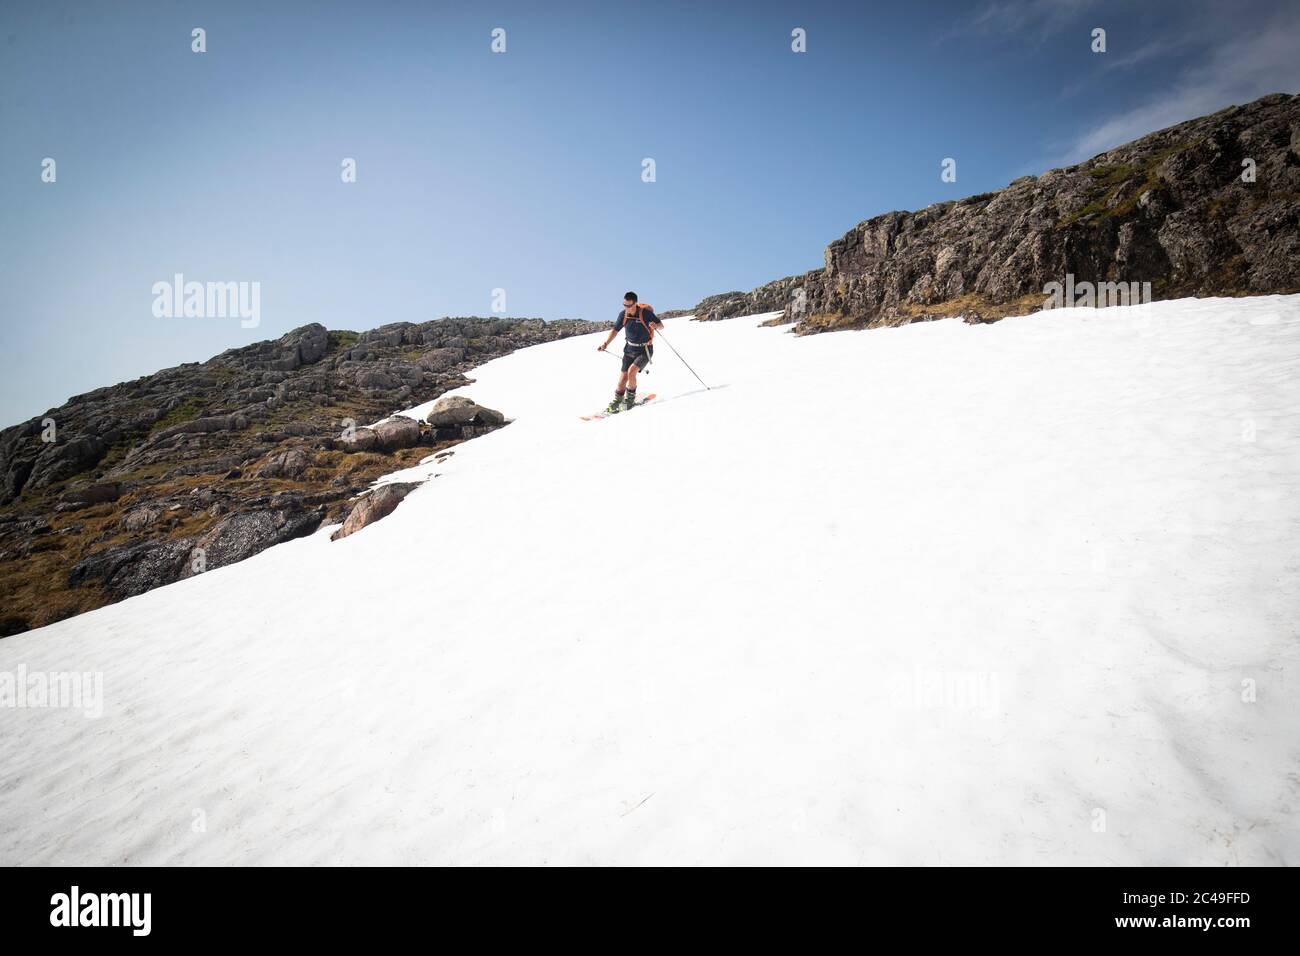 Andy Meldrum, propriétaire du Glencoe Mountain Resort, enchaîne certaines des pistes de neige restantes sur les pistes de Meall a'Bhuiridh à Glencoe, car jeudi pourrait être le jour le plus chaud de l'année au Royaume-Uni avec des températures brûlants qui devraient augmenter encore davantage. Banque D'Images